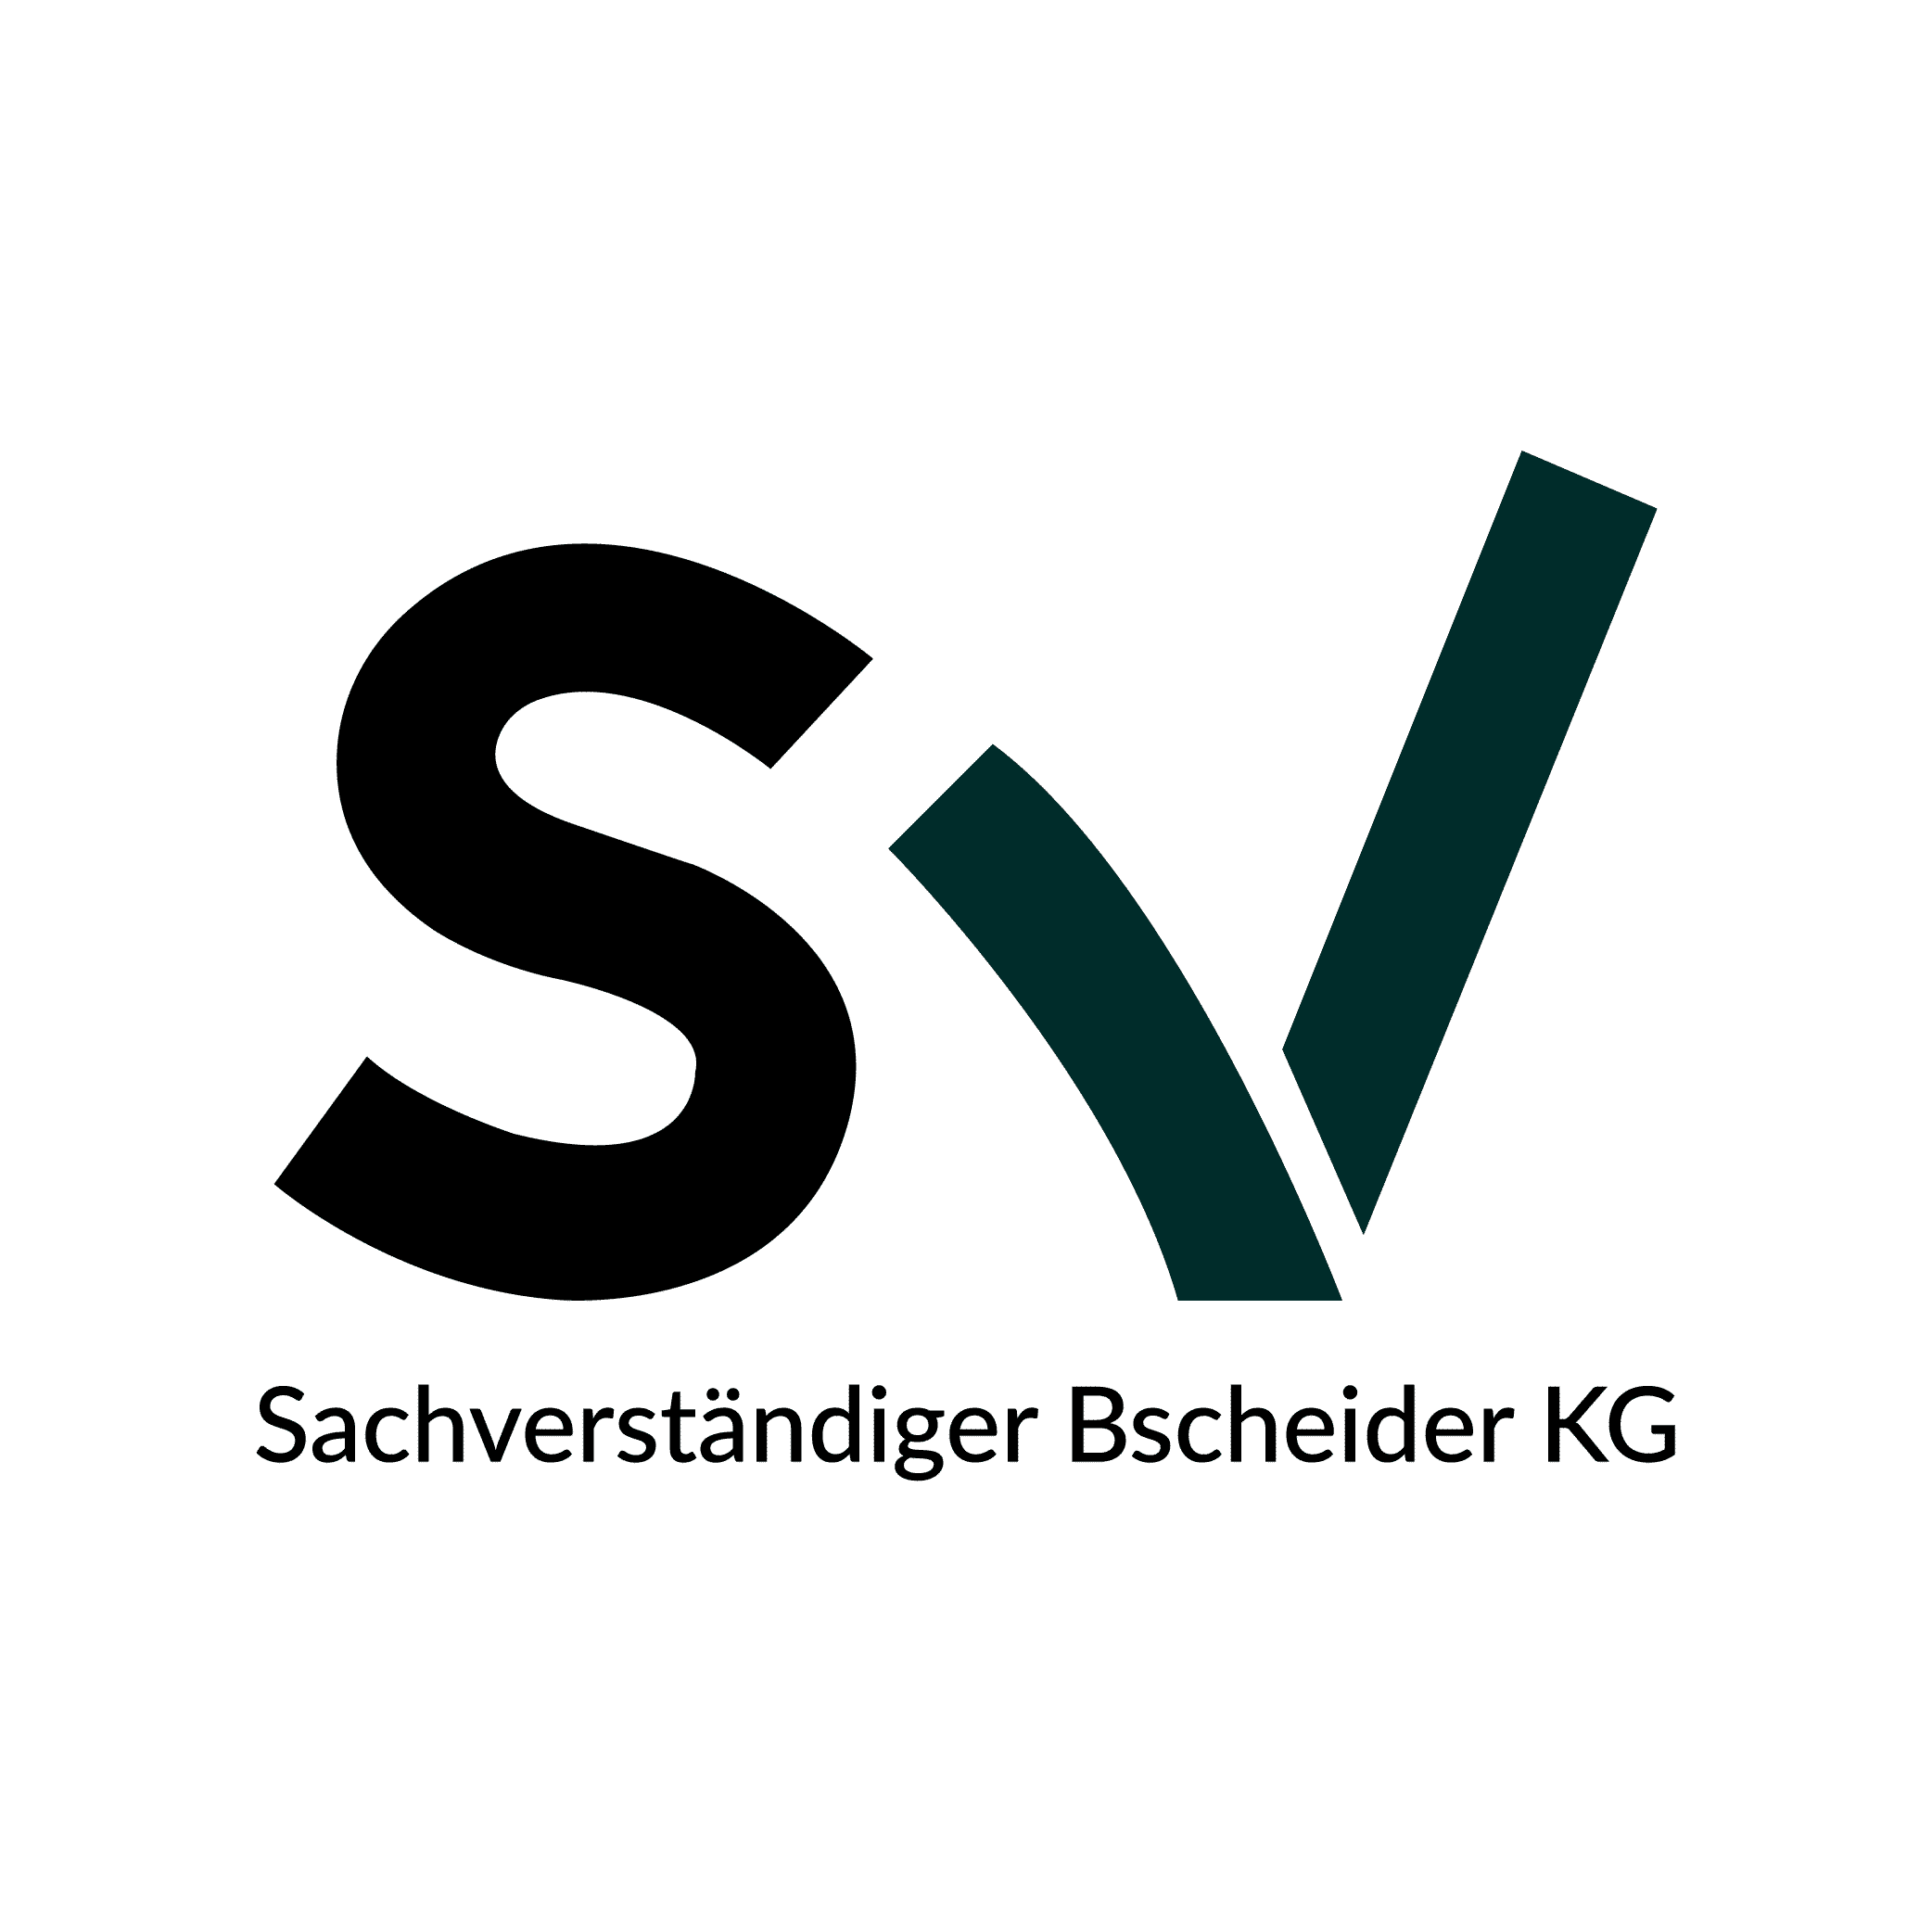 Bscheider-Logo_Zeichenflaeche-1-2.png